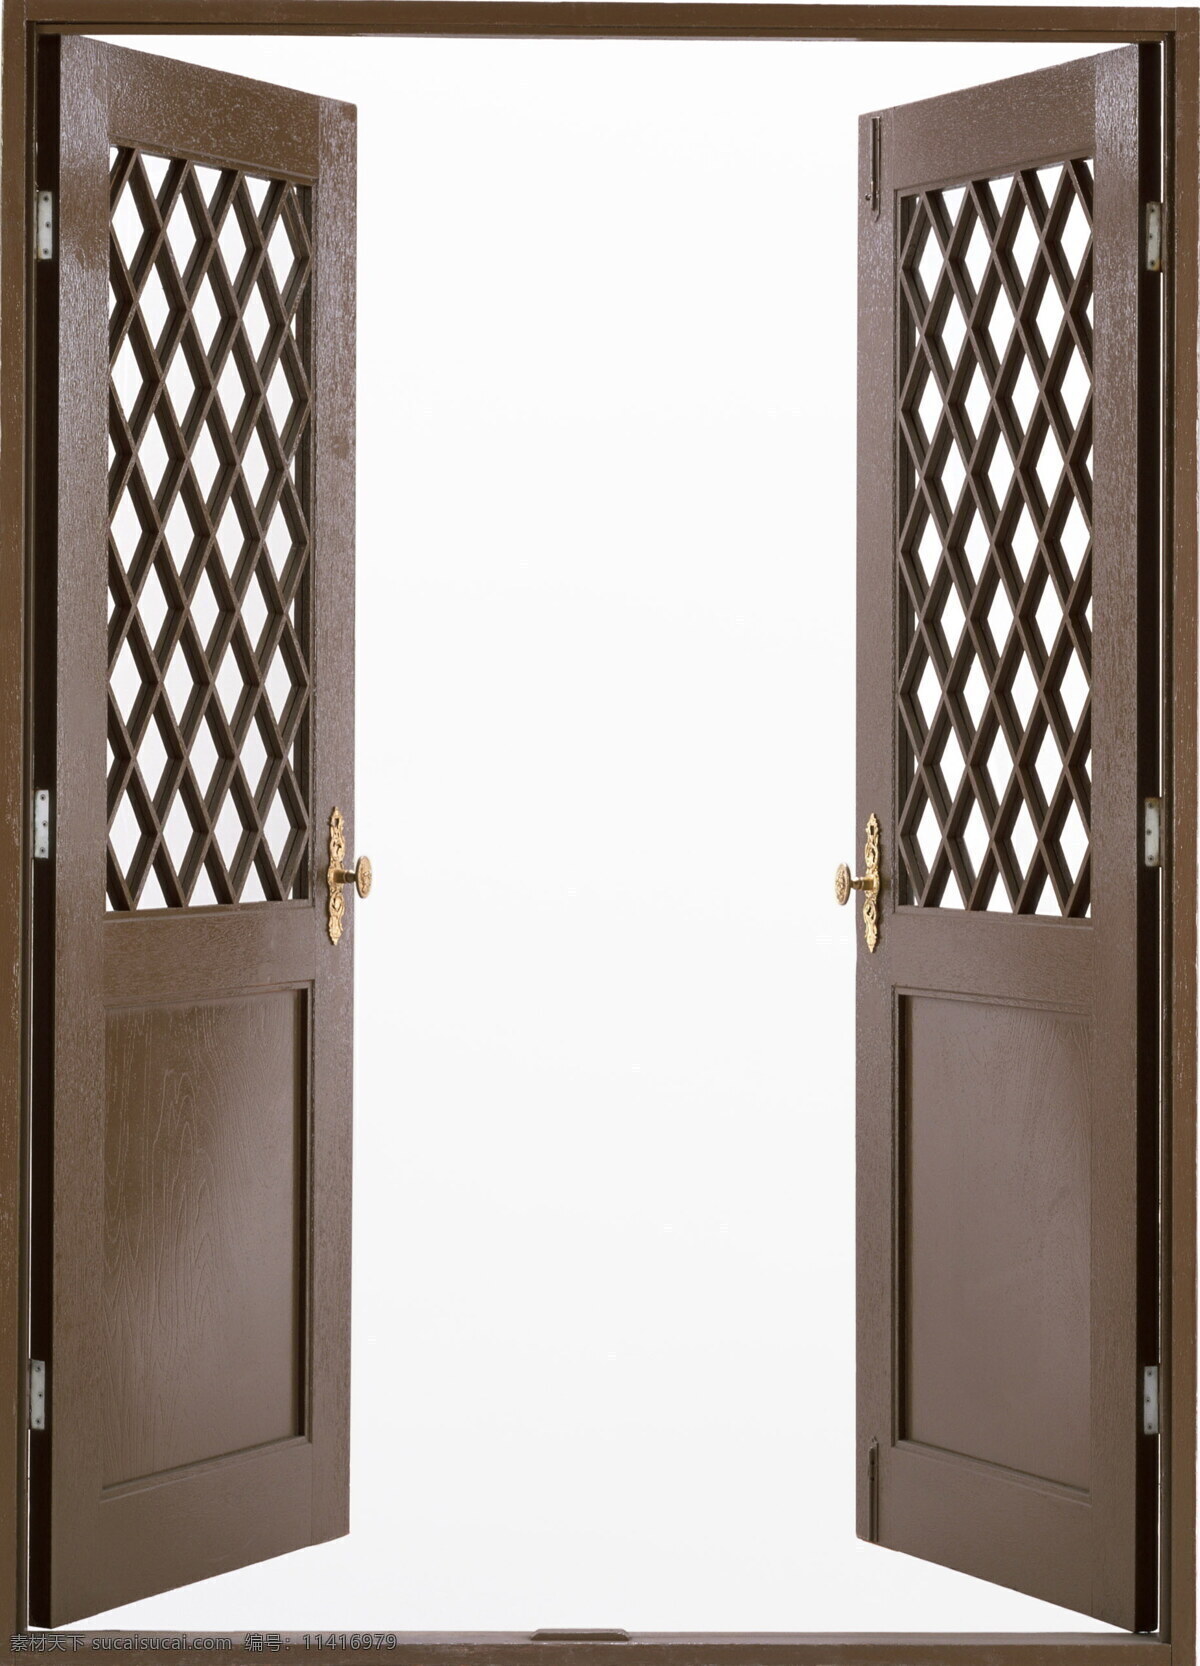 双开金属门 贴图0275 贴图 设计素材 铁门 贴图素材 建筑装饰 白色